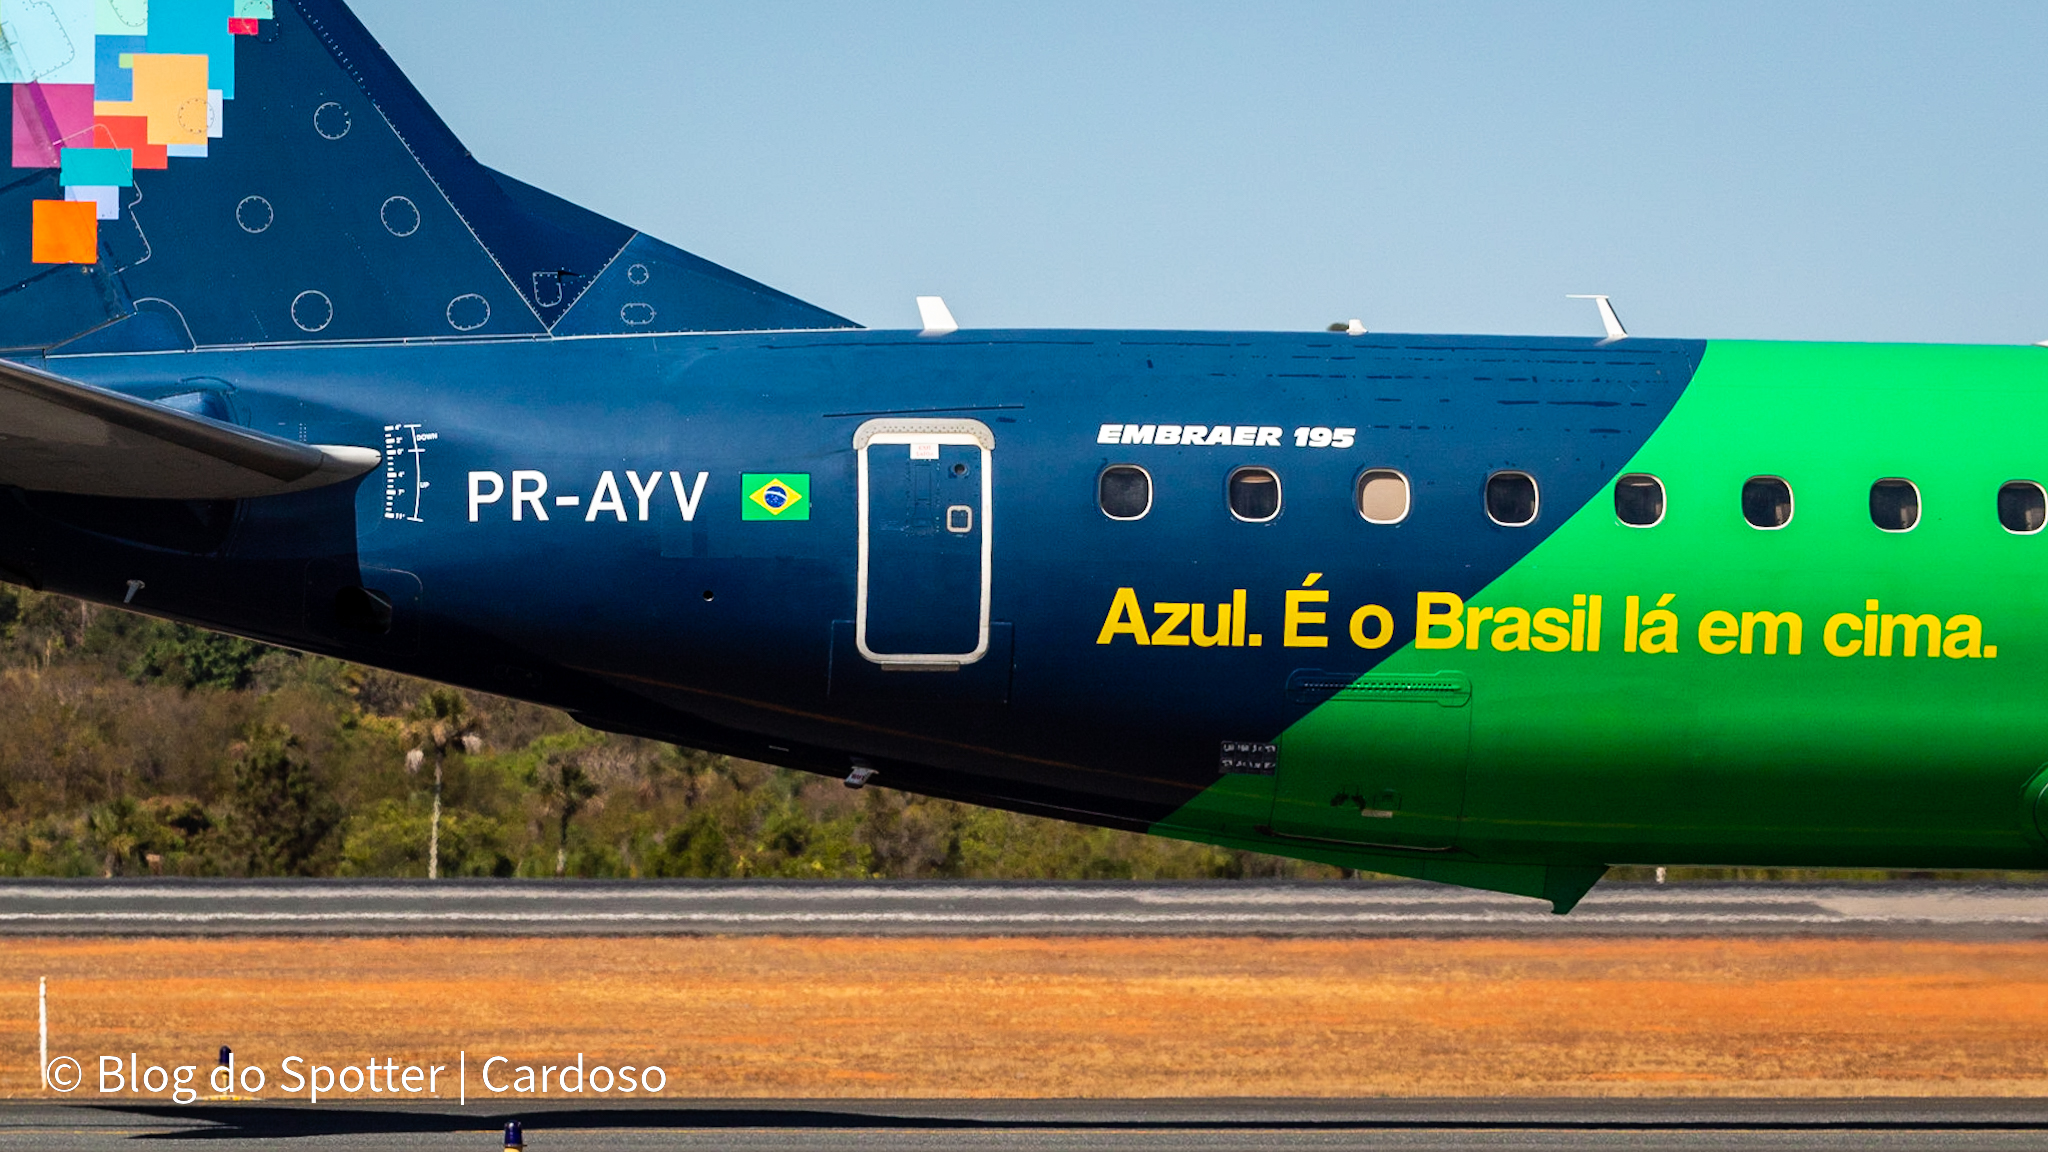 PR-AYV – Embraer 195 – Bandeirinha da Azul Linhas Aéreas